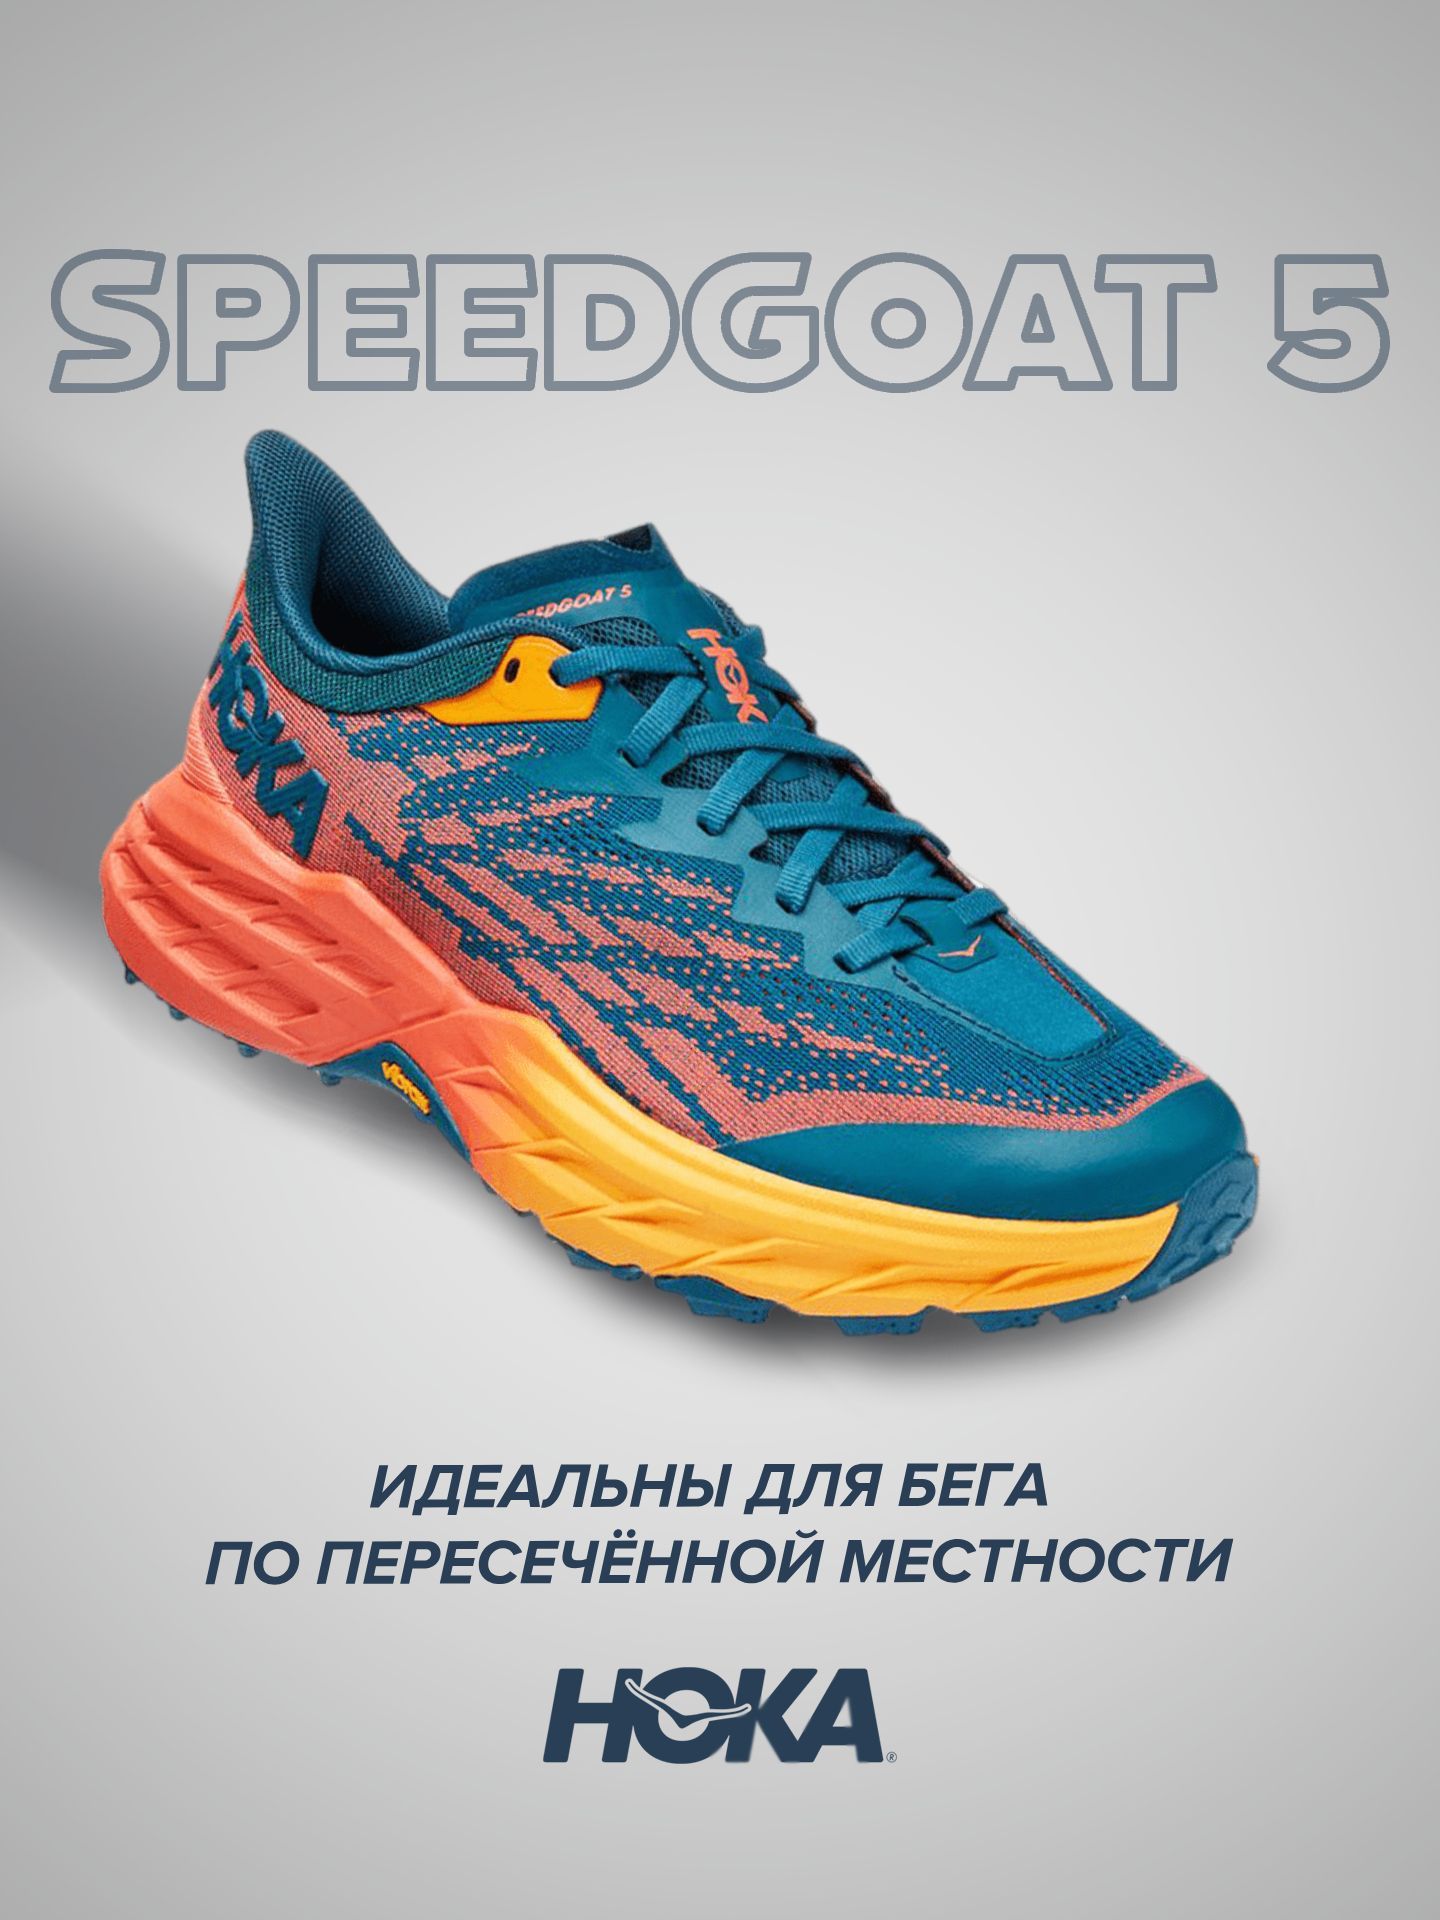 Спортивные кроссовки женские Hoka Speedgoat 5 бирюзовые 7.5 US